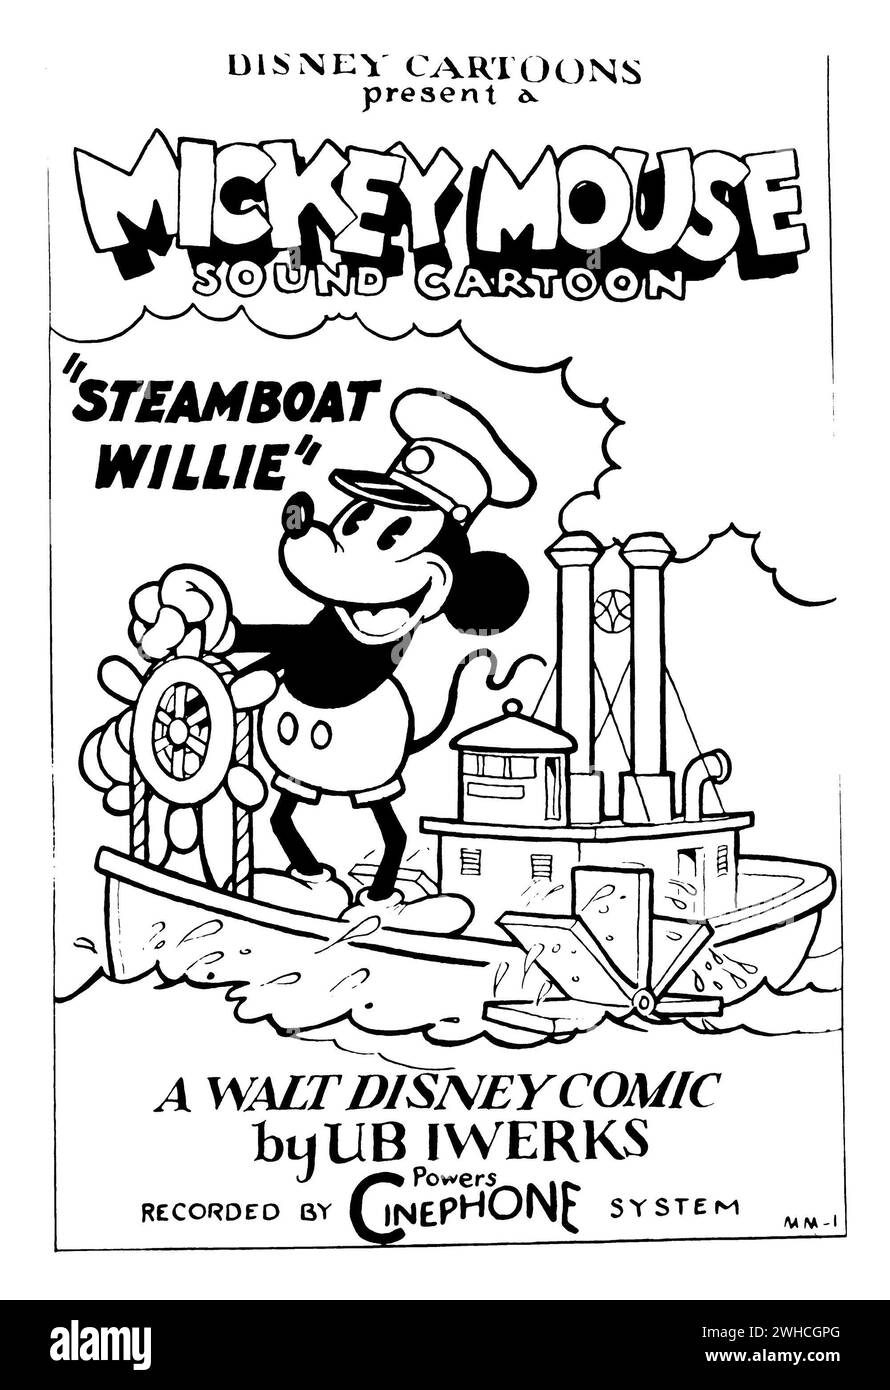 Bateau à vapeur Willie. Affiche originale du dessin animé 1928, Steamboat Willie - premier court métrage animé de Mickey Mouse. Banque D'Images